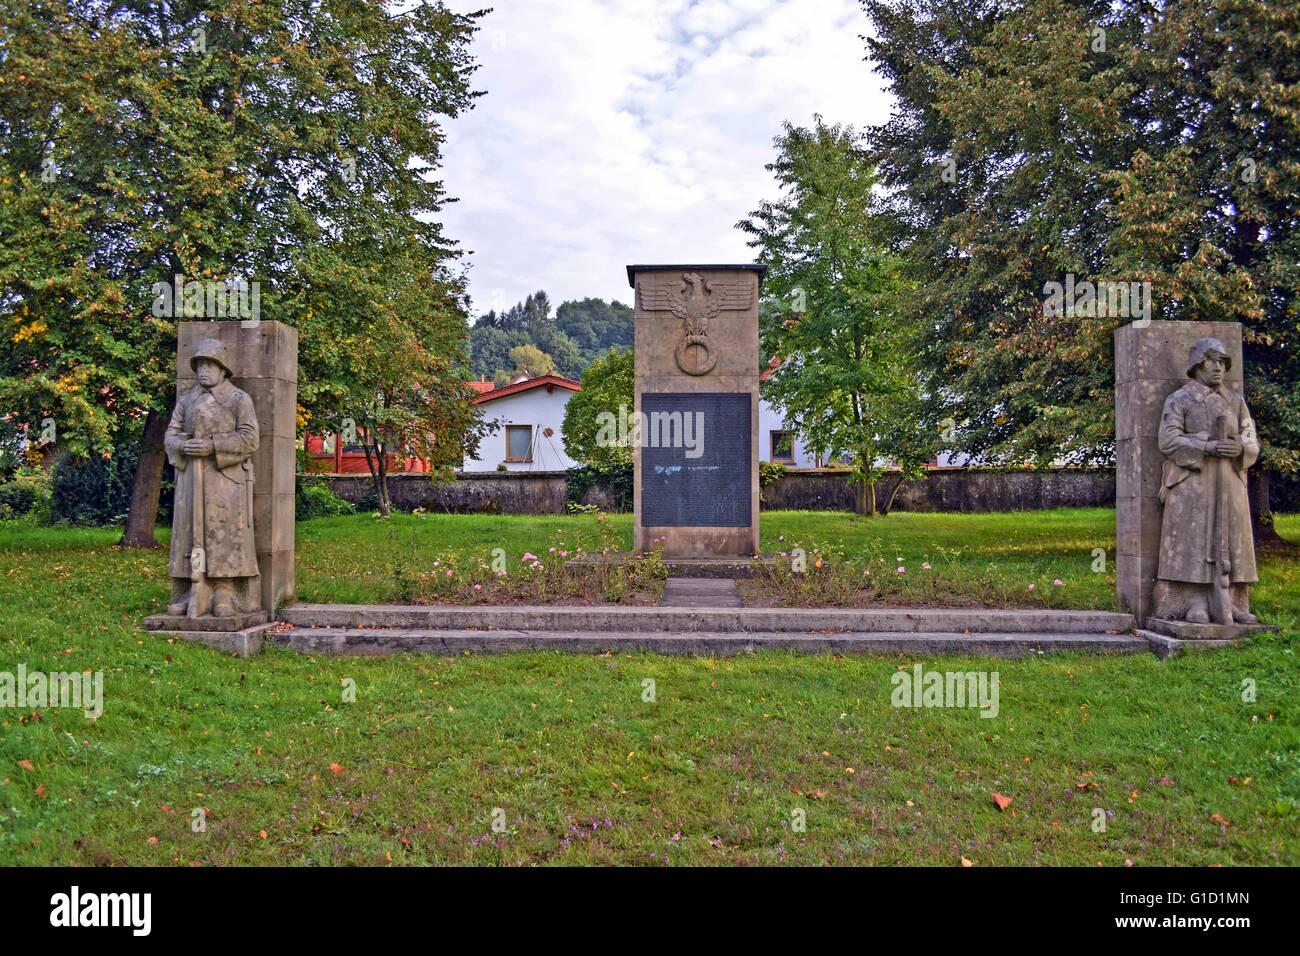 German World War memorial, erected 1939, in German Saarland. Front View Stock Photo